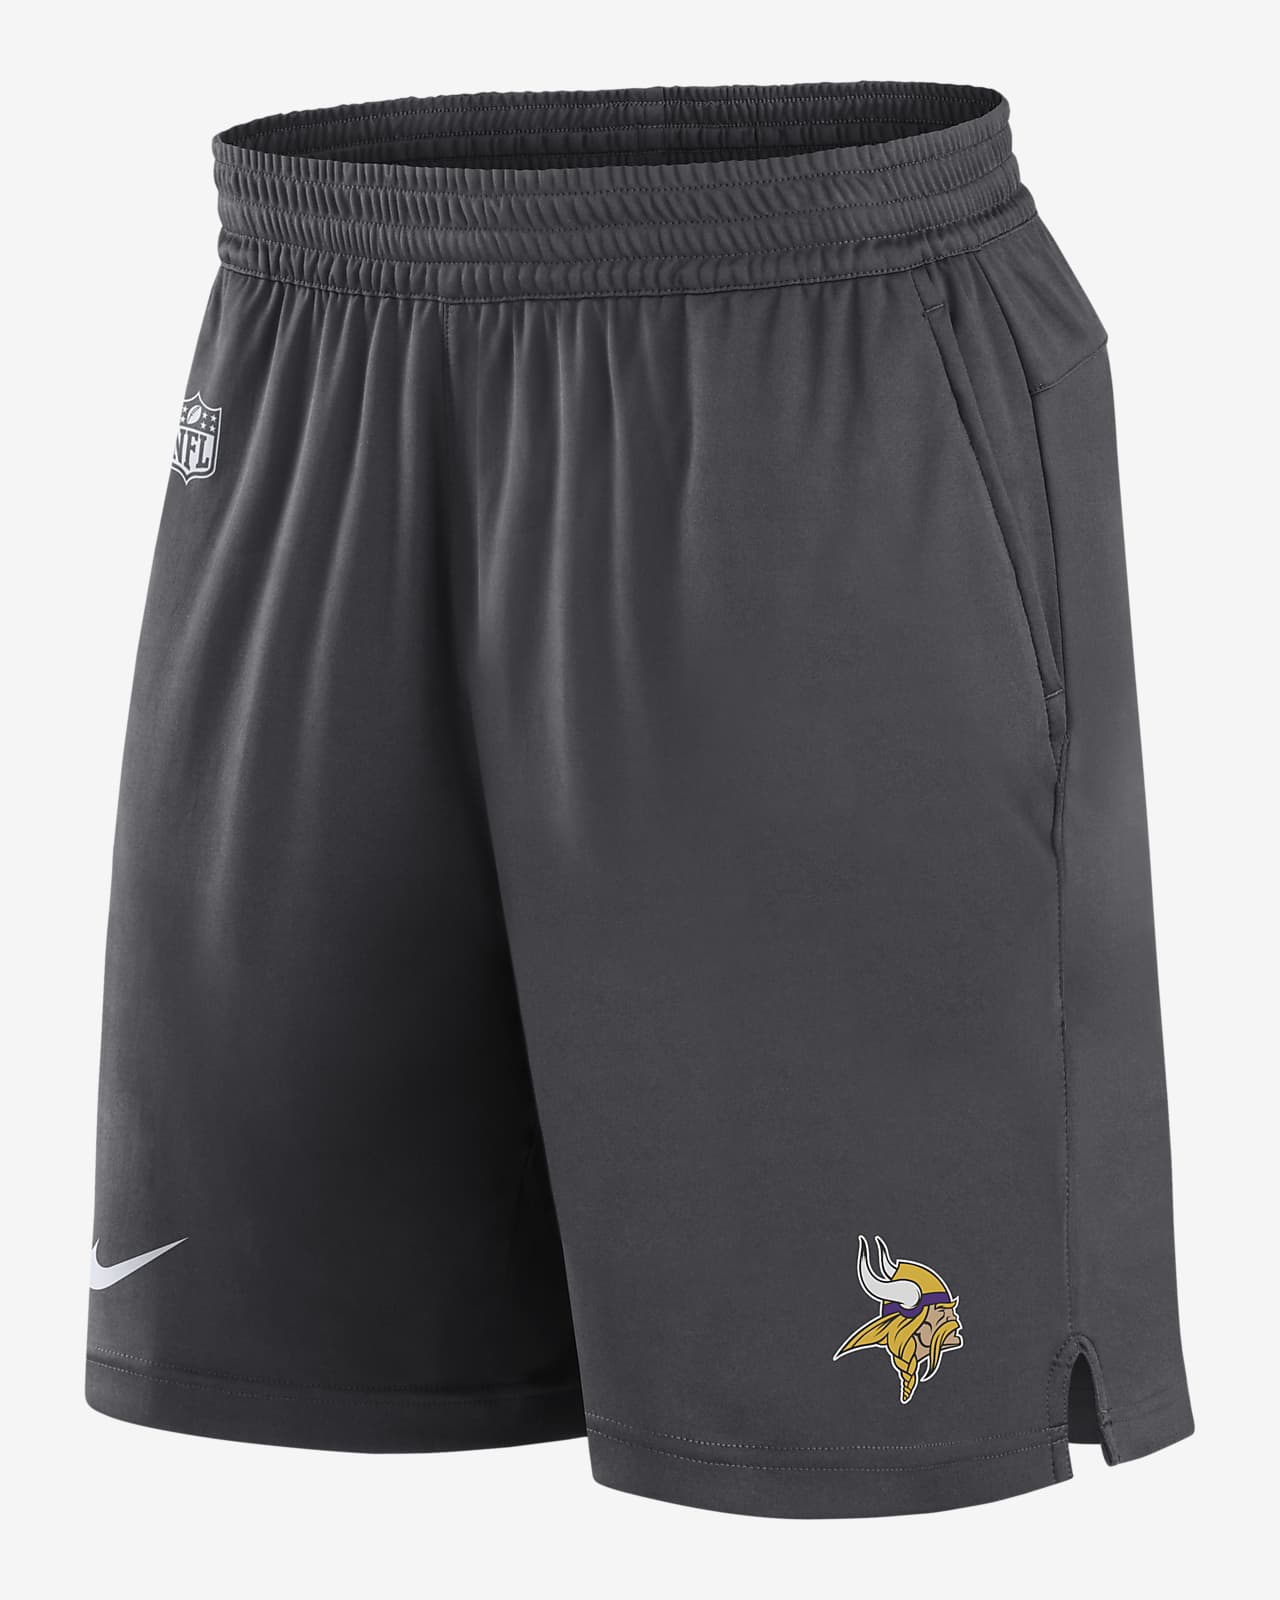 Nike Dri-FIT Sideline (NFL Minnesota Vikings) Men's Shorts.